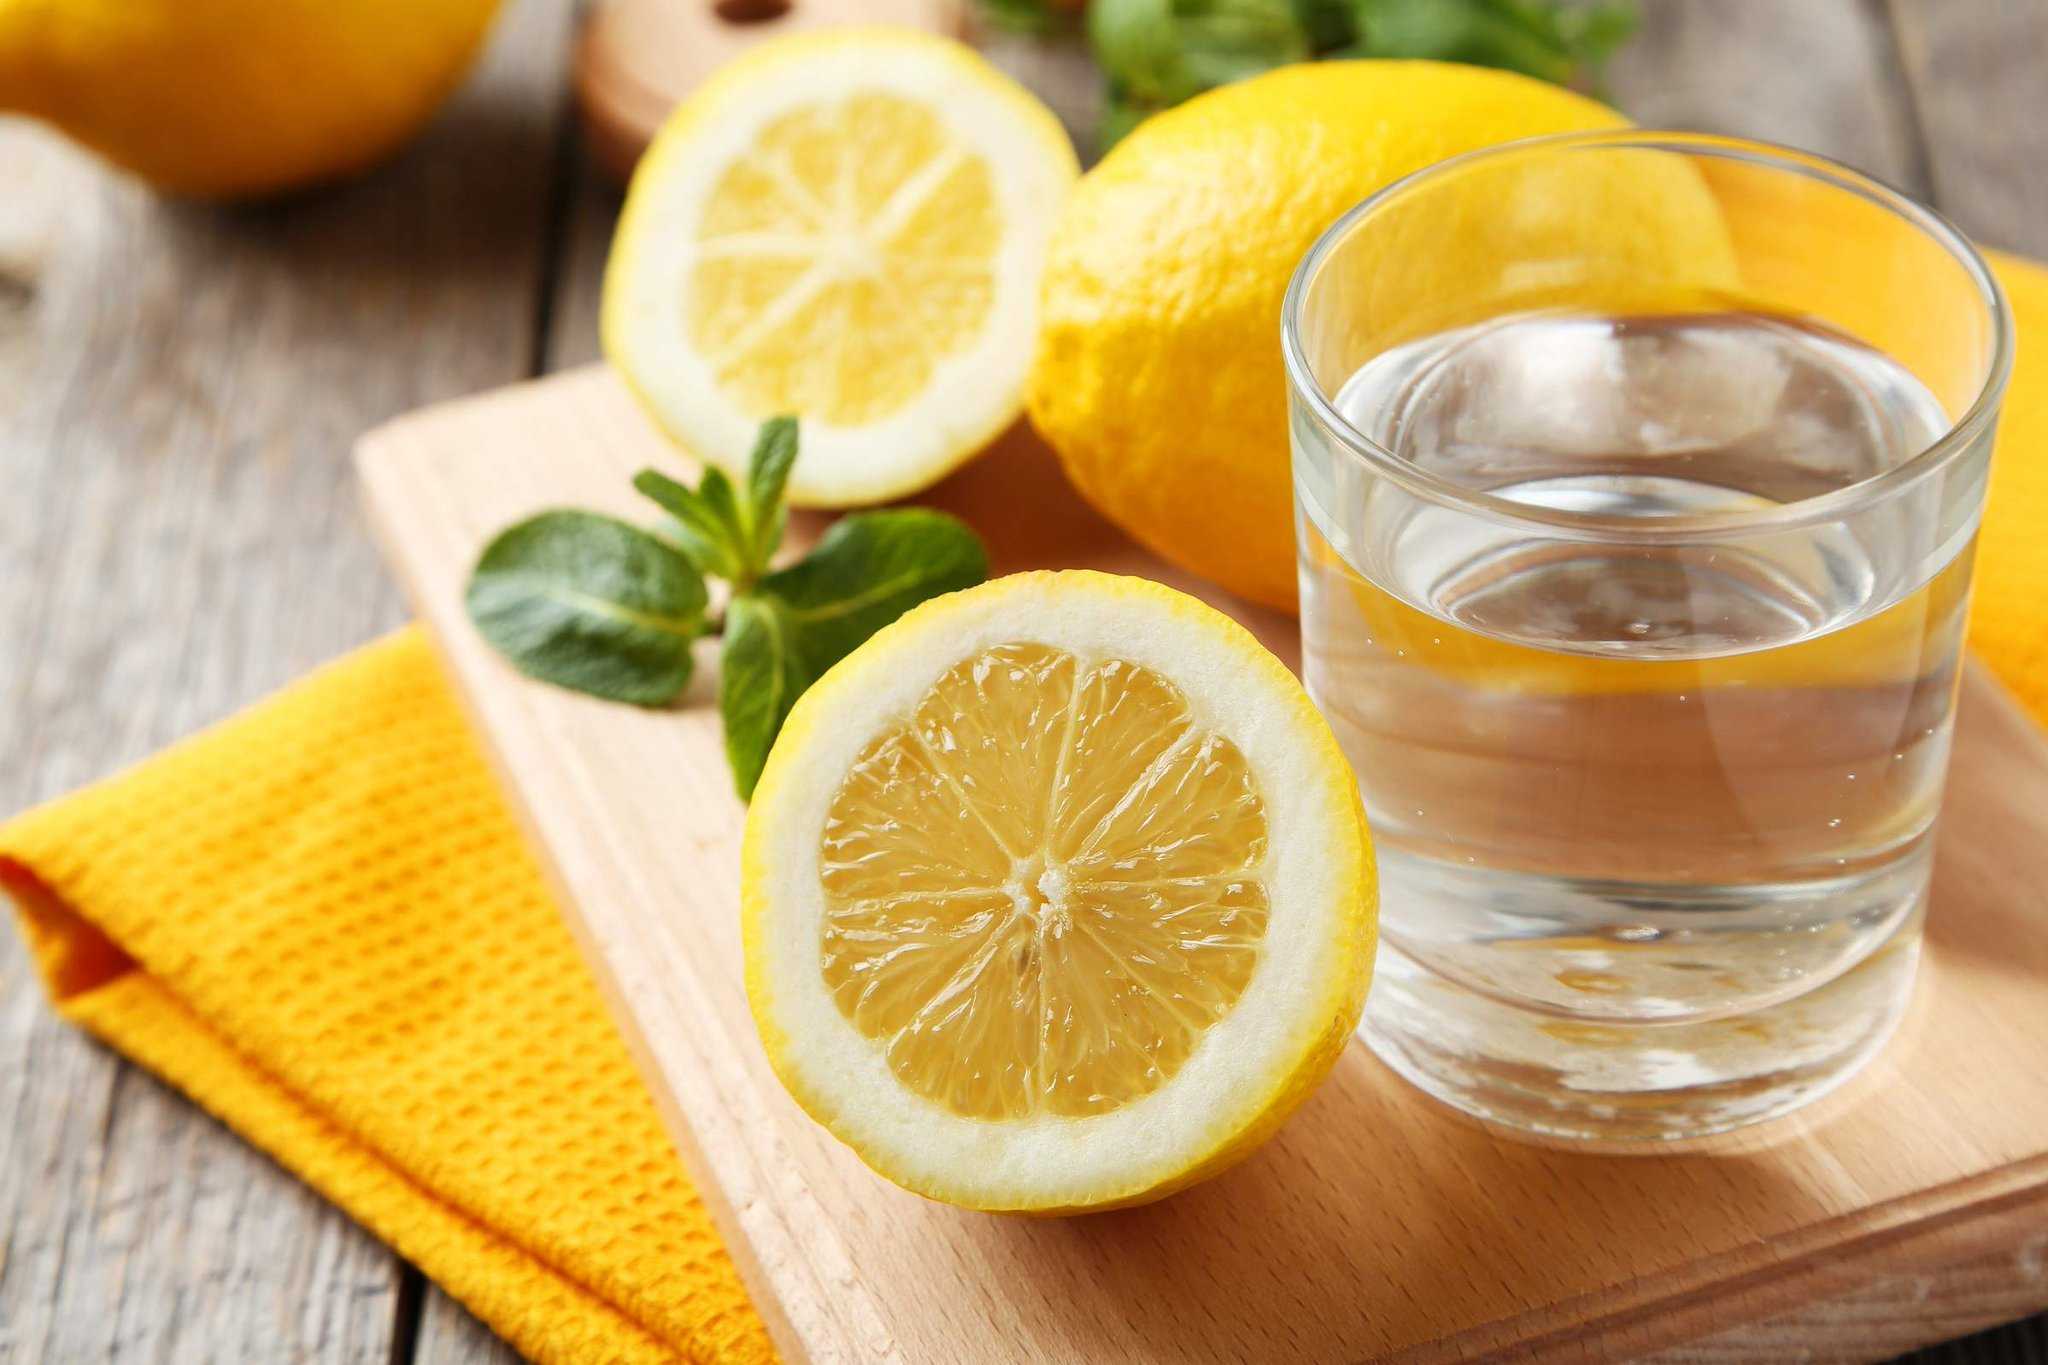 Вода с лимон на тощак. Вода с лимоном. Стакан воды с лимоном. Стакан с лимоном. Вода с лимонным соком.